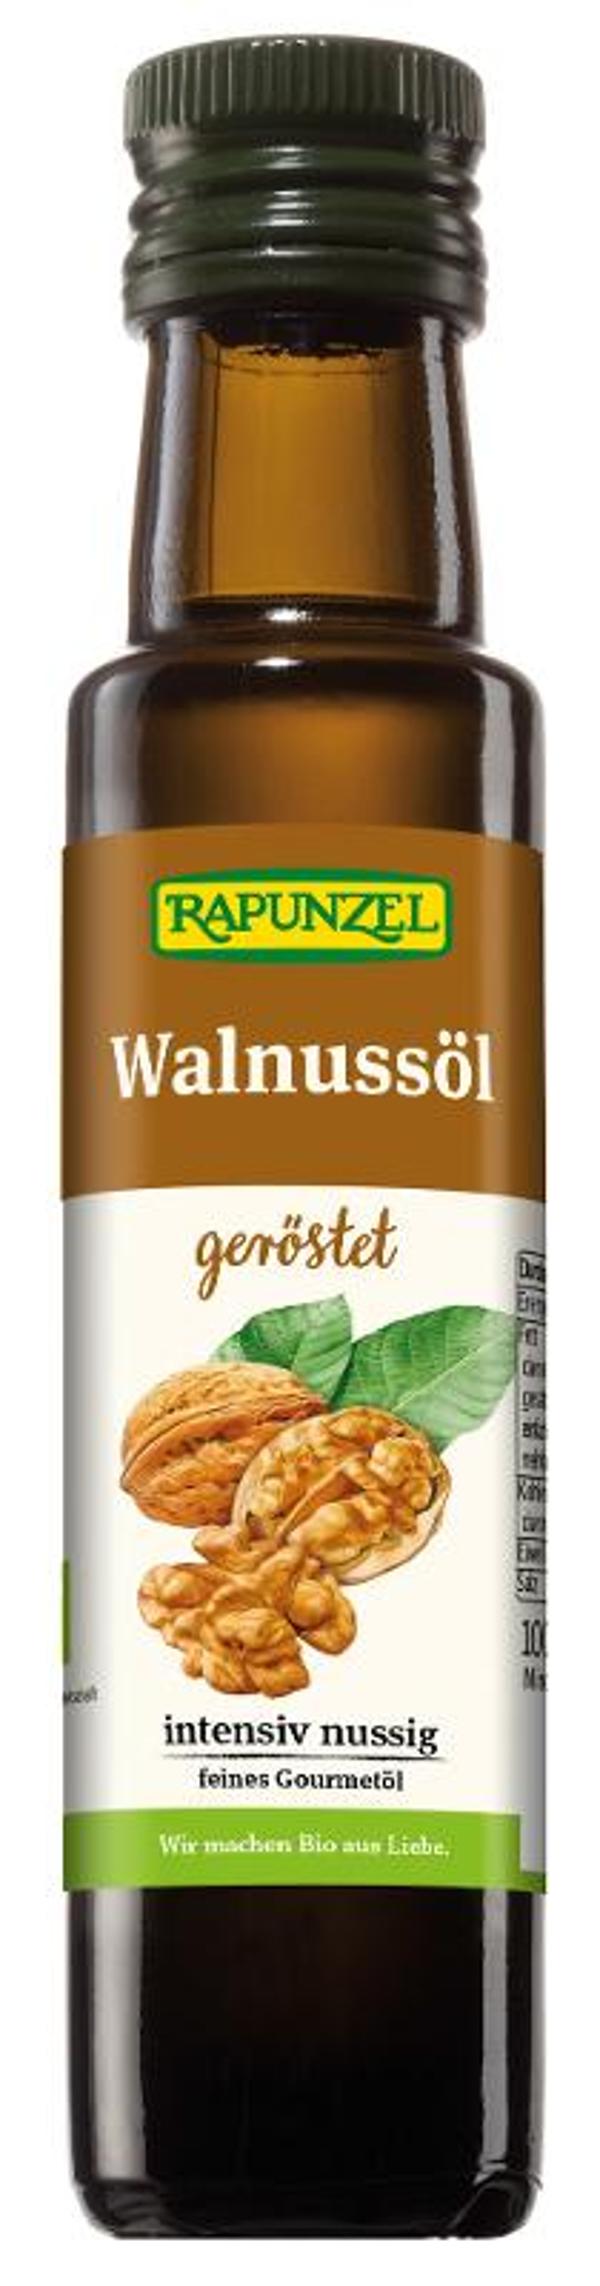 Produktfoto zu Walnussöl von Rapunzel